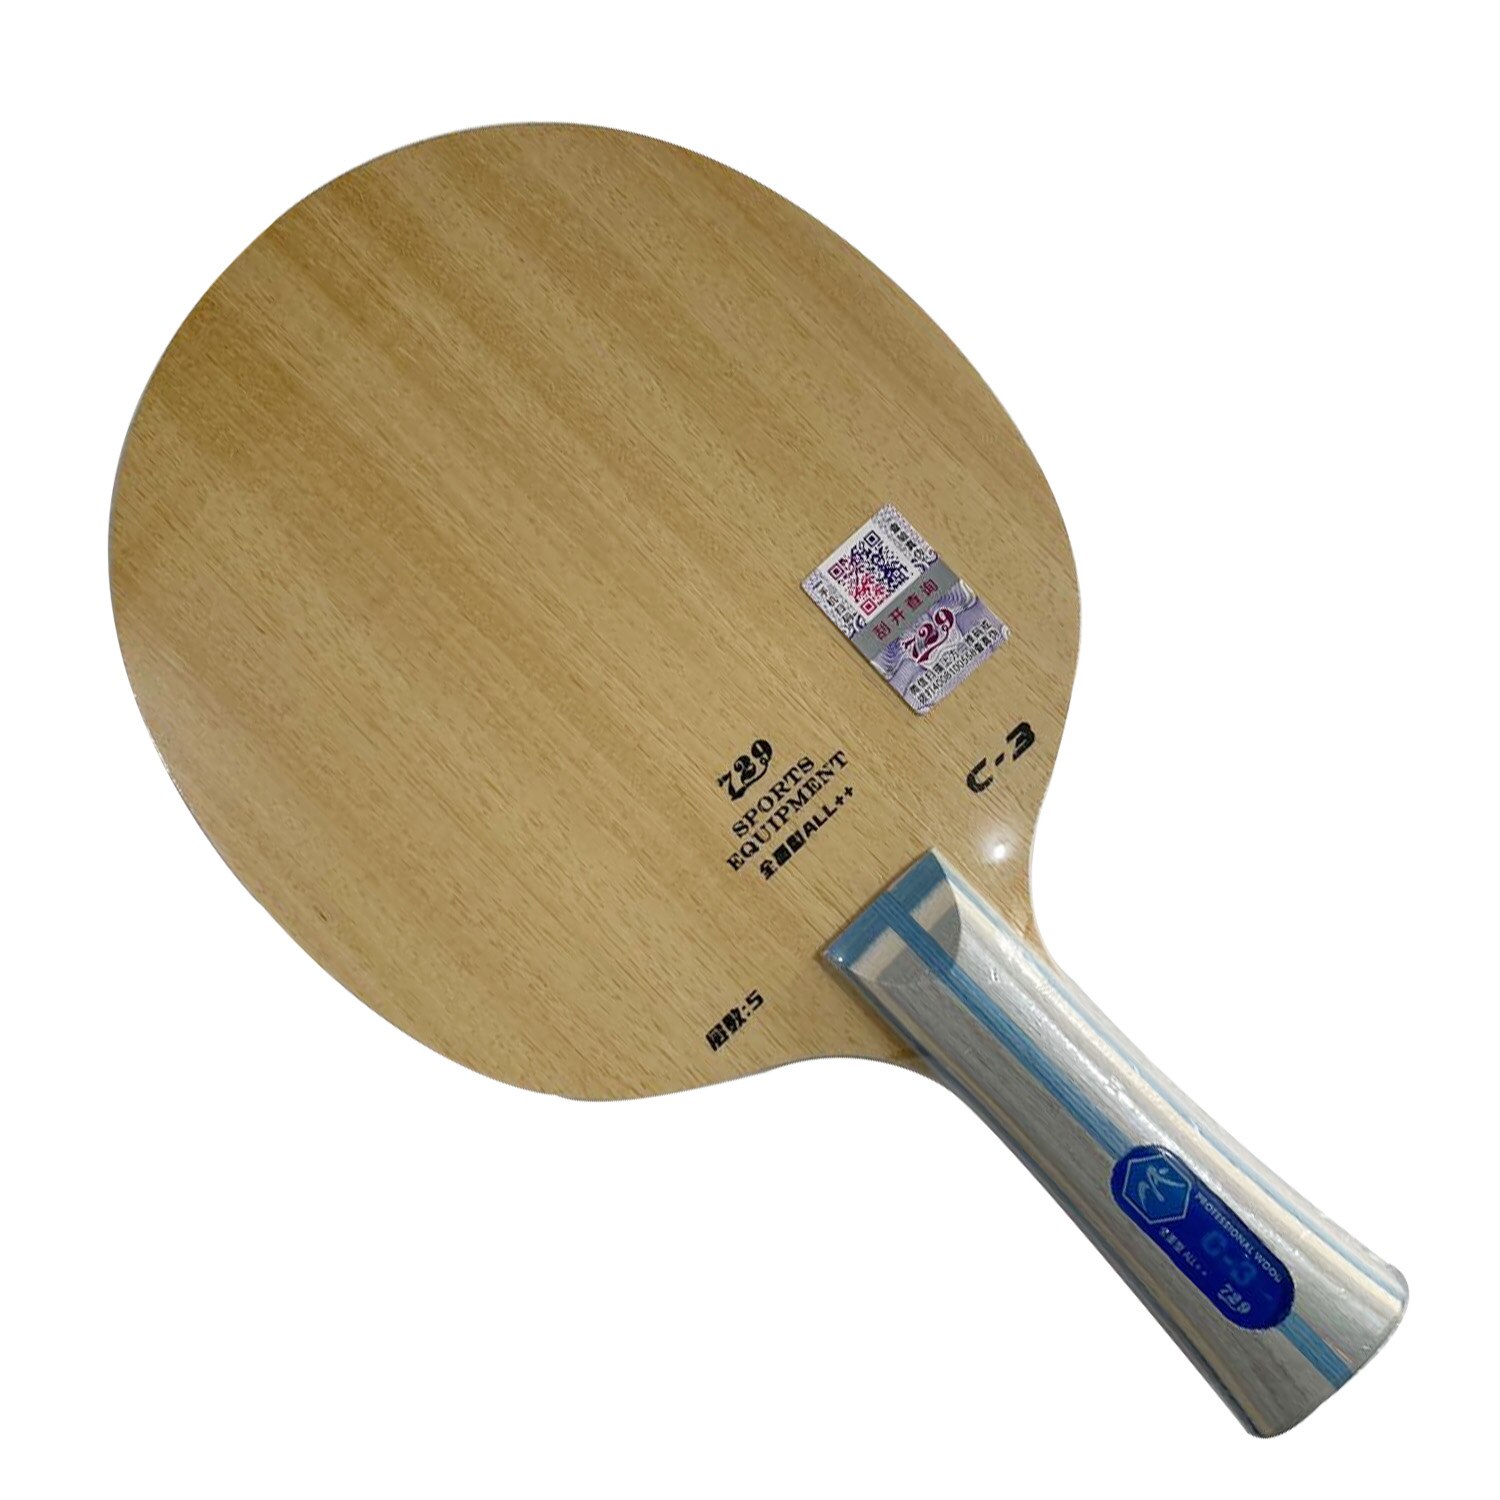 Pro Combo Racket 729 C-3 Blade met 2x Algemene Rubbers voor Tafeltennis paddle bat